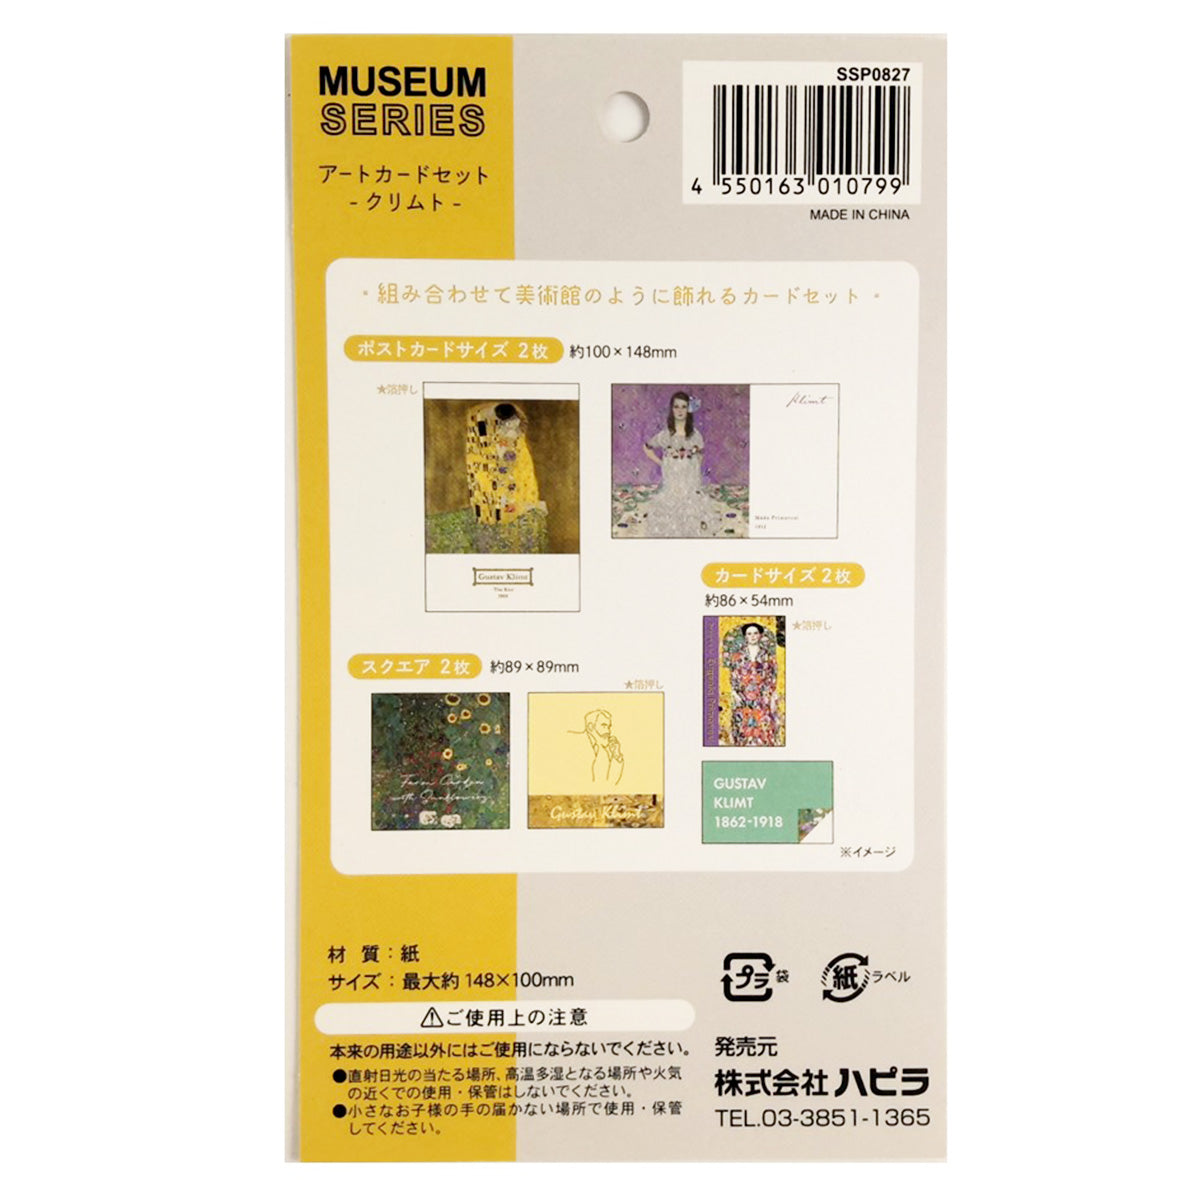 ポストカード メッセージカード ミュージアム2 アートカードセット クリムト 9001/345566